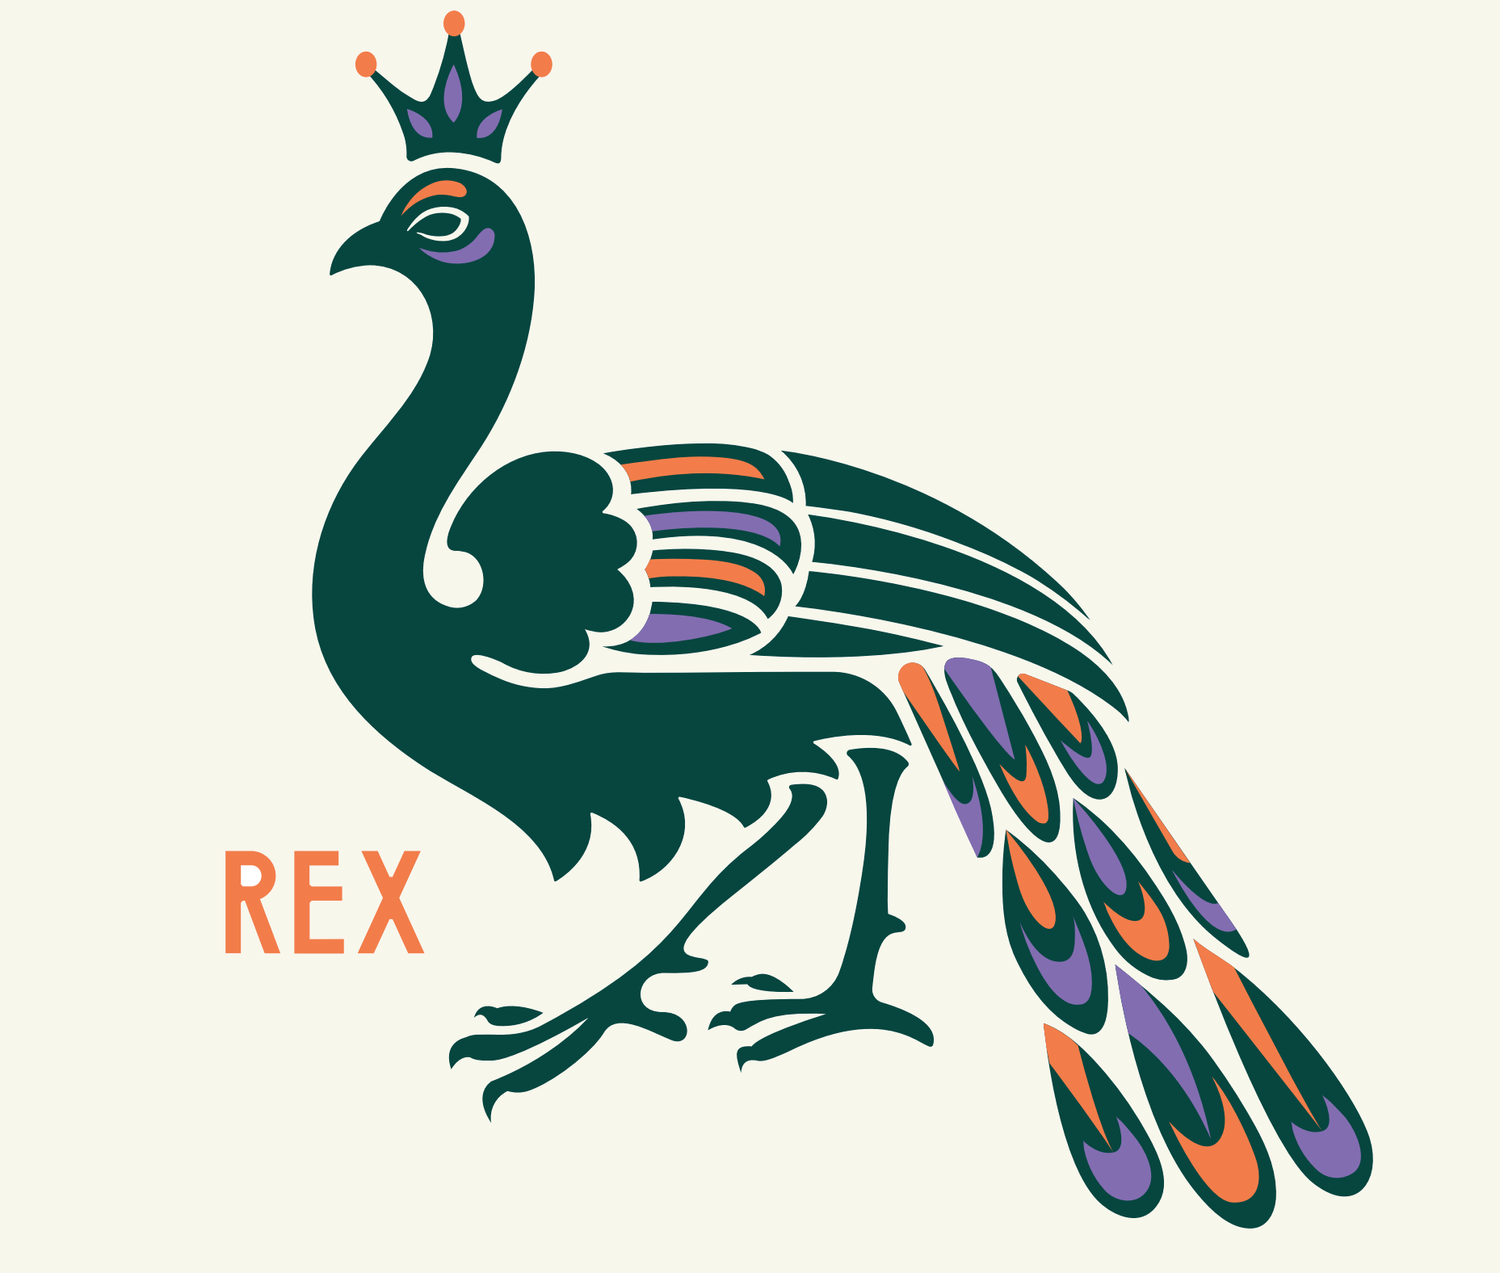 Rex at the Royal